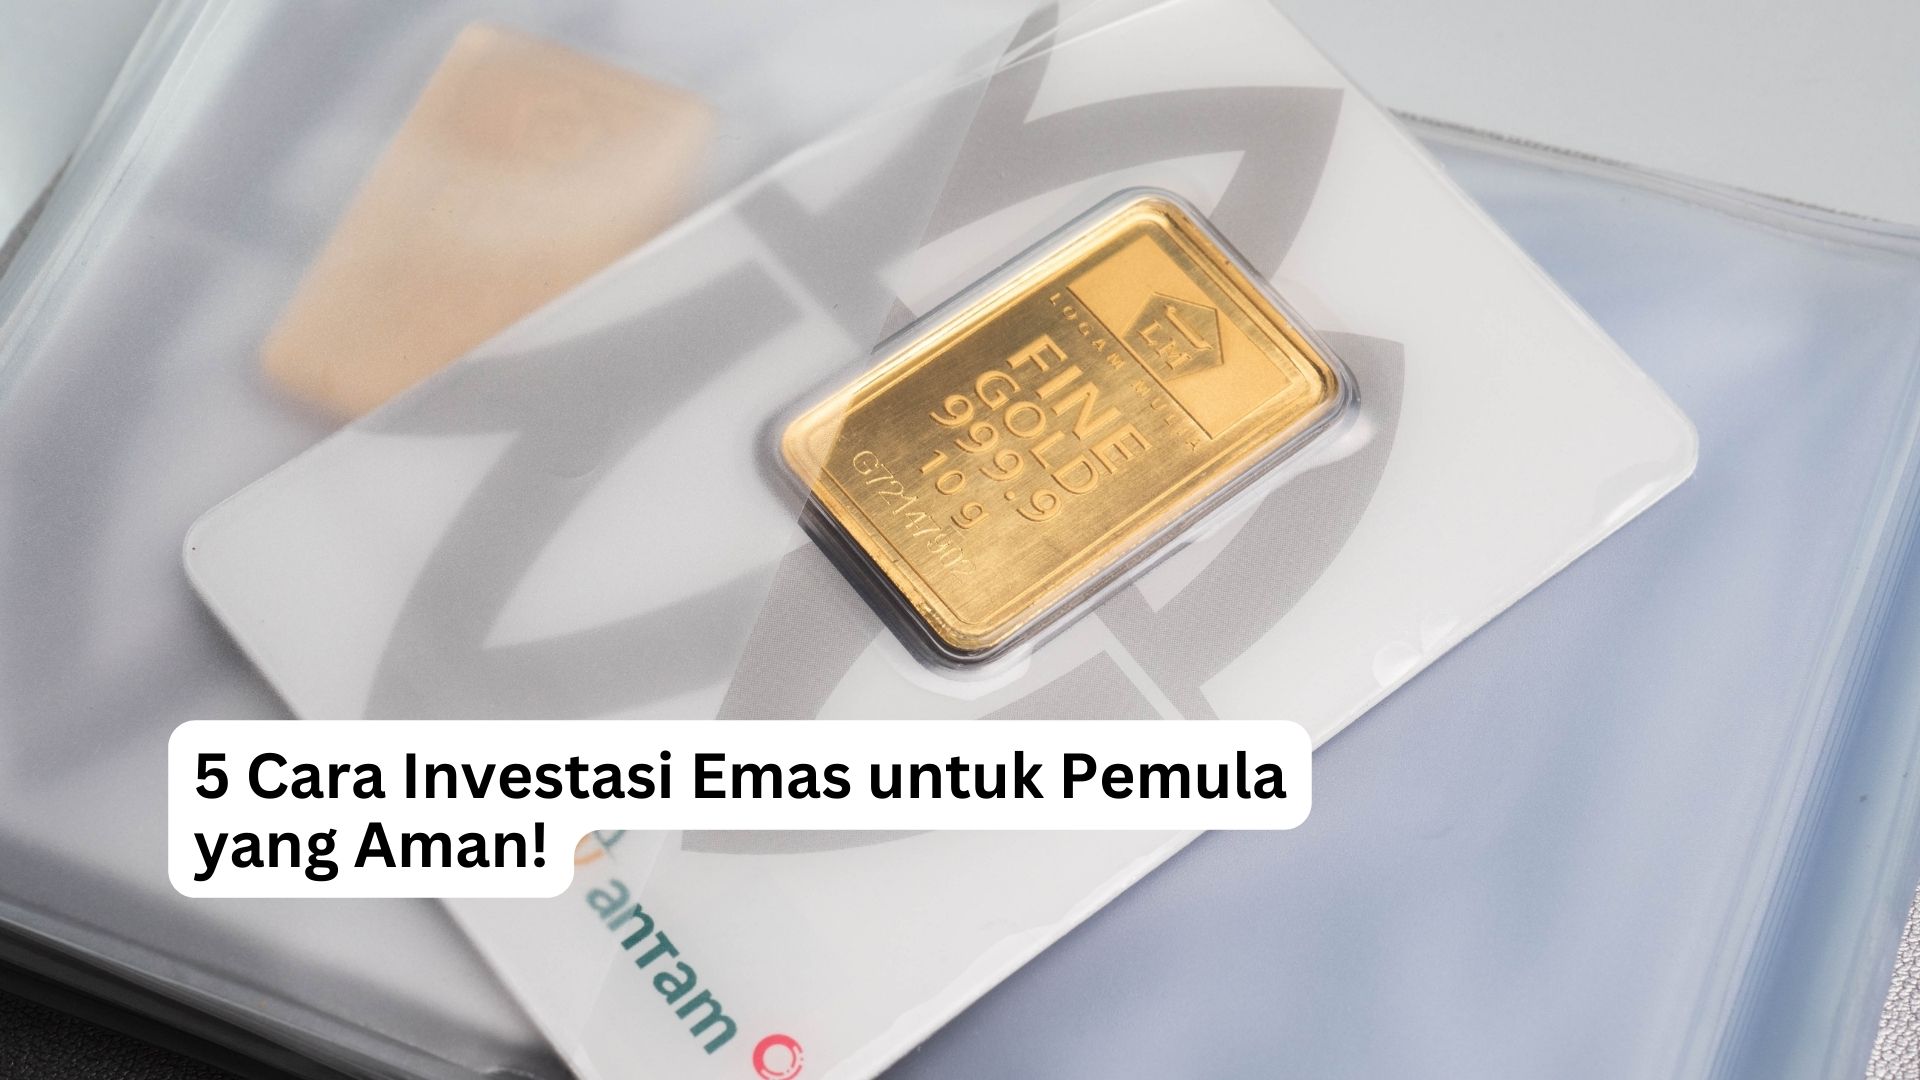 You are currently viewing 5 Cara Investasi Emas untuk Pemula yang Aman!